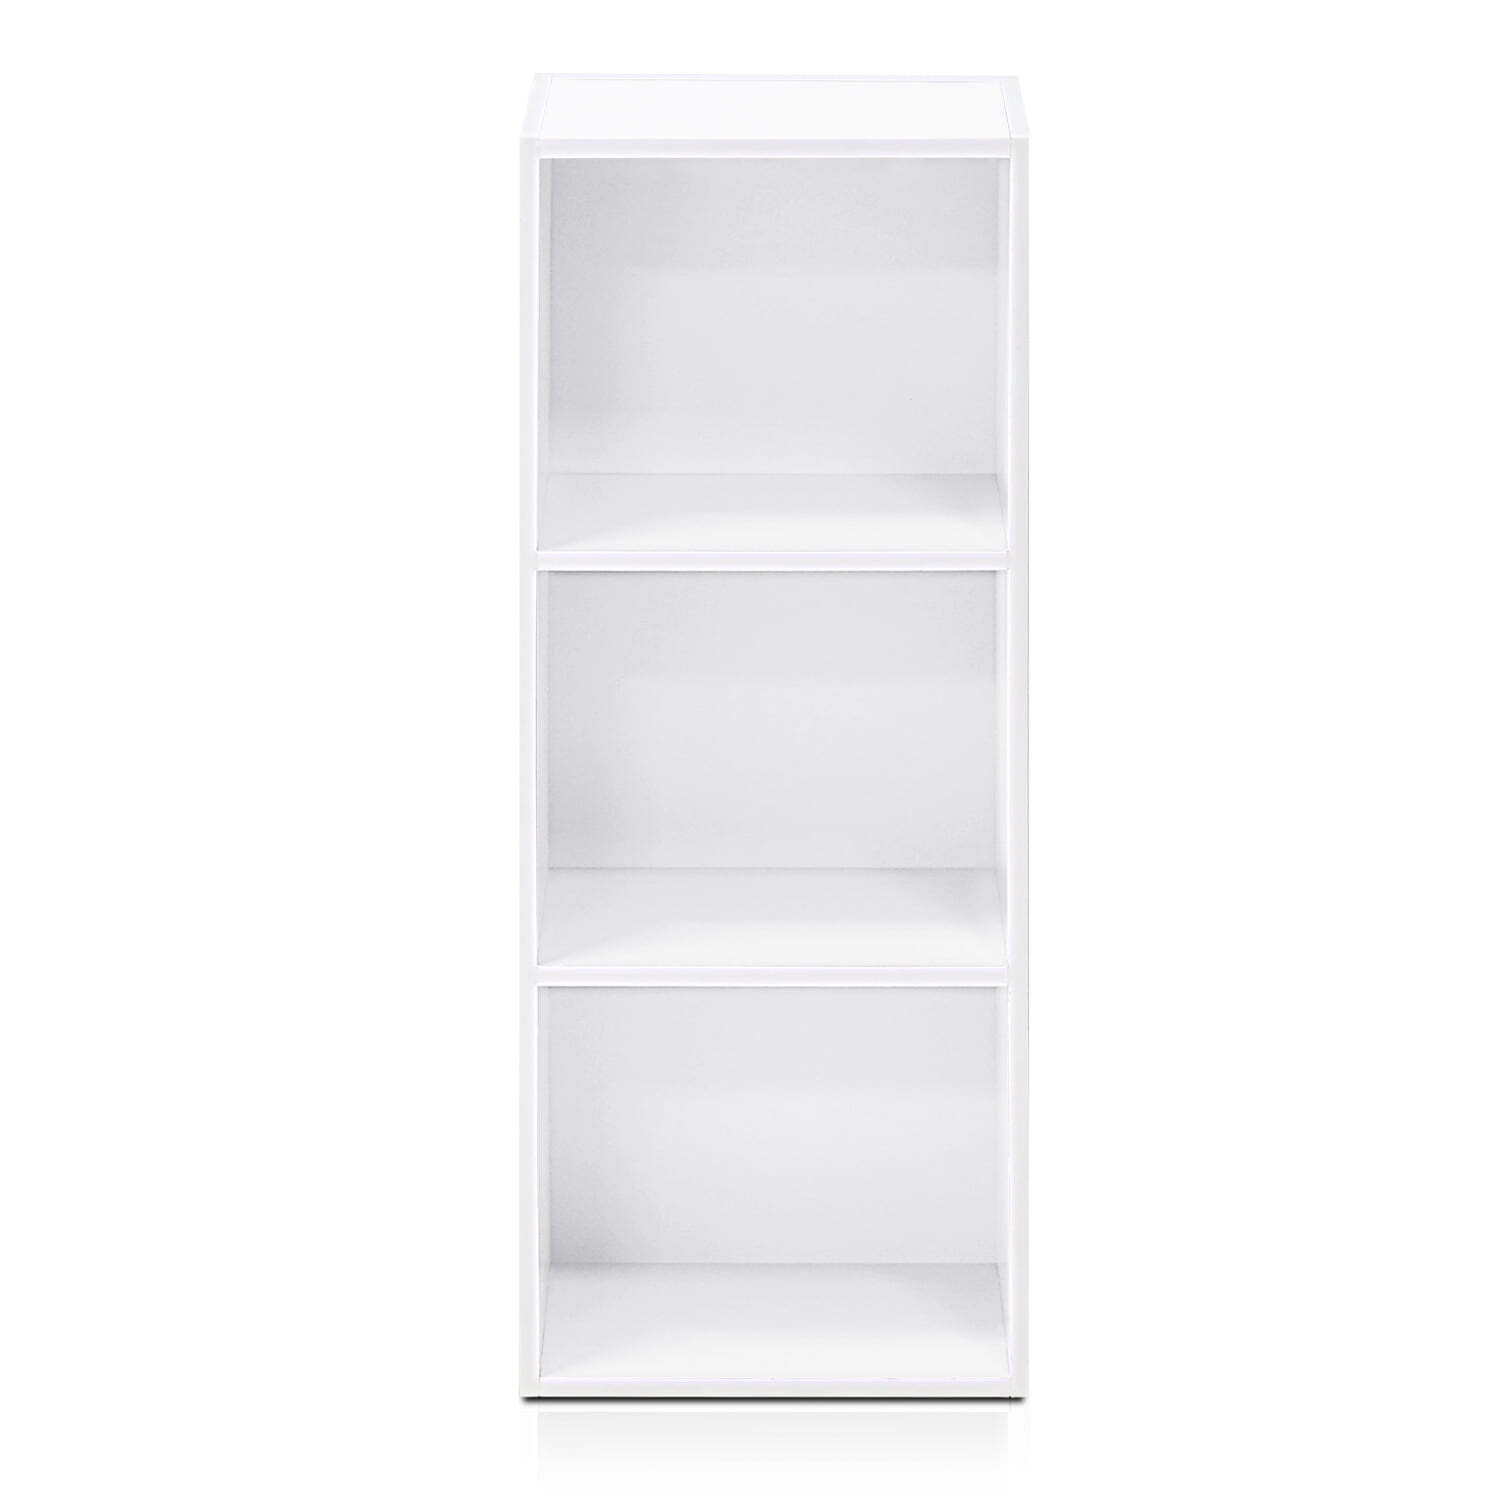 11003WH 3 - Tier Open Shelf Bookcase, White Color - 12